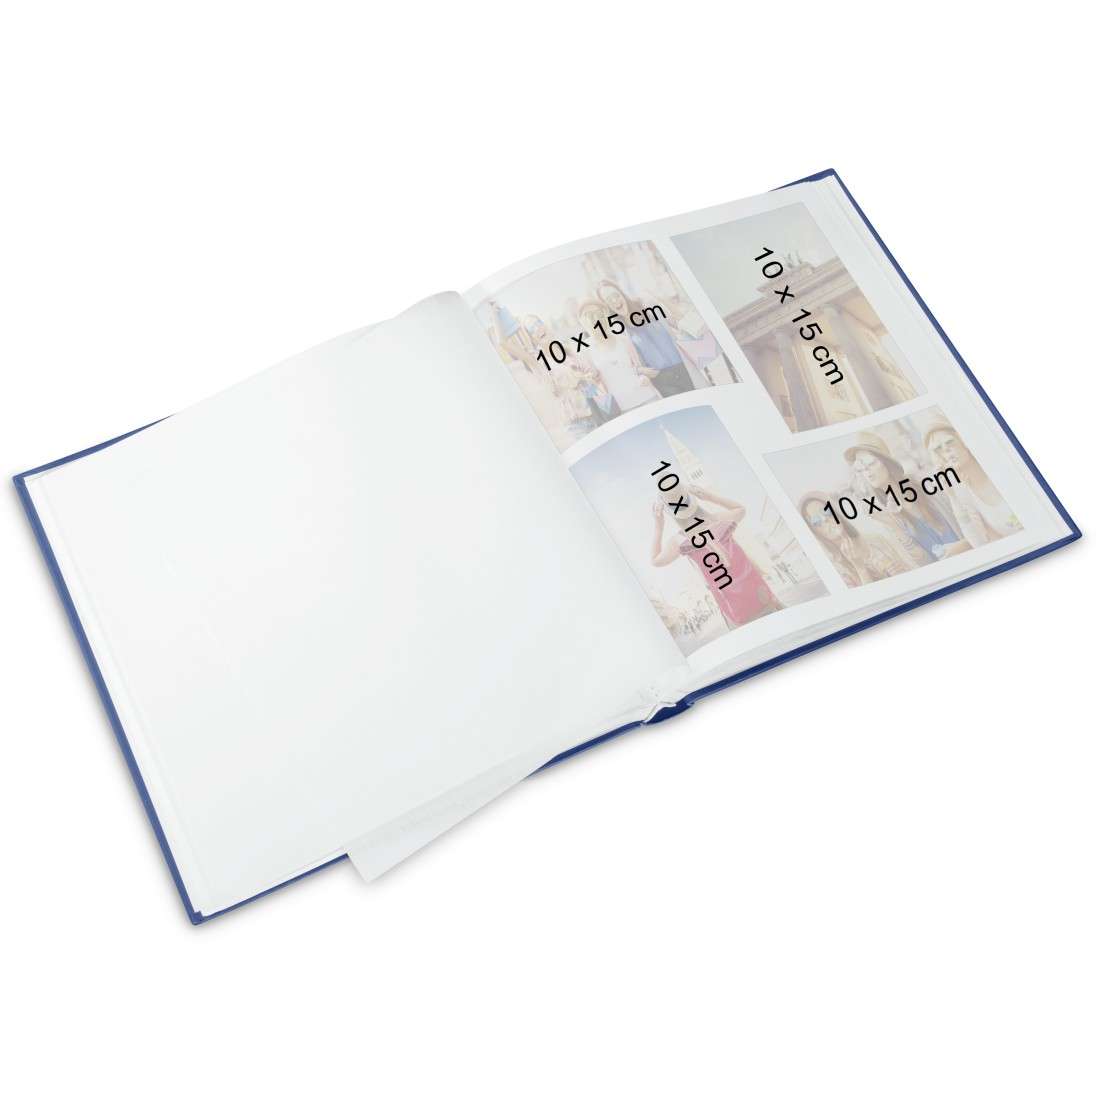 Buch-Album Baby Feel, 29x32 cm, 60 weiße Seiten, 2seitiger Textvorspann